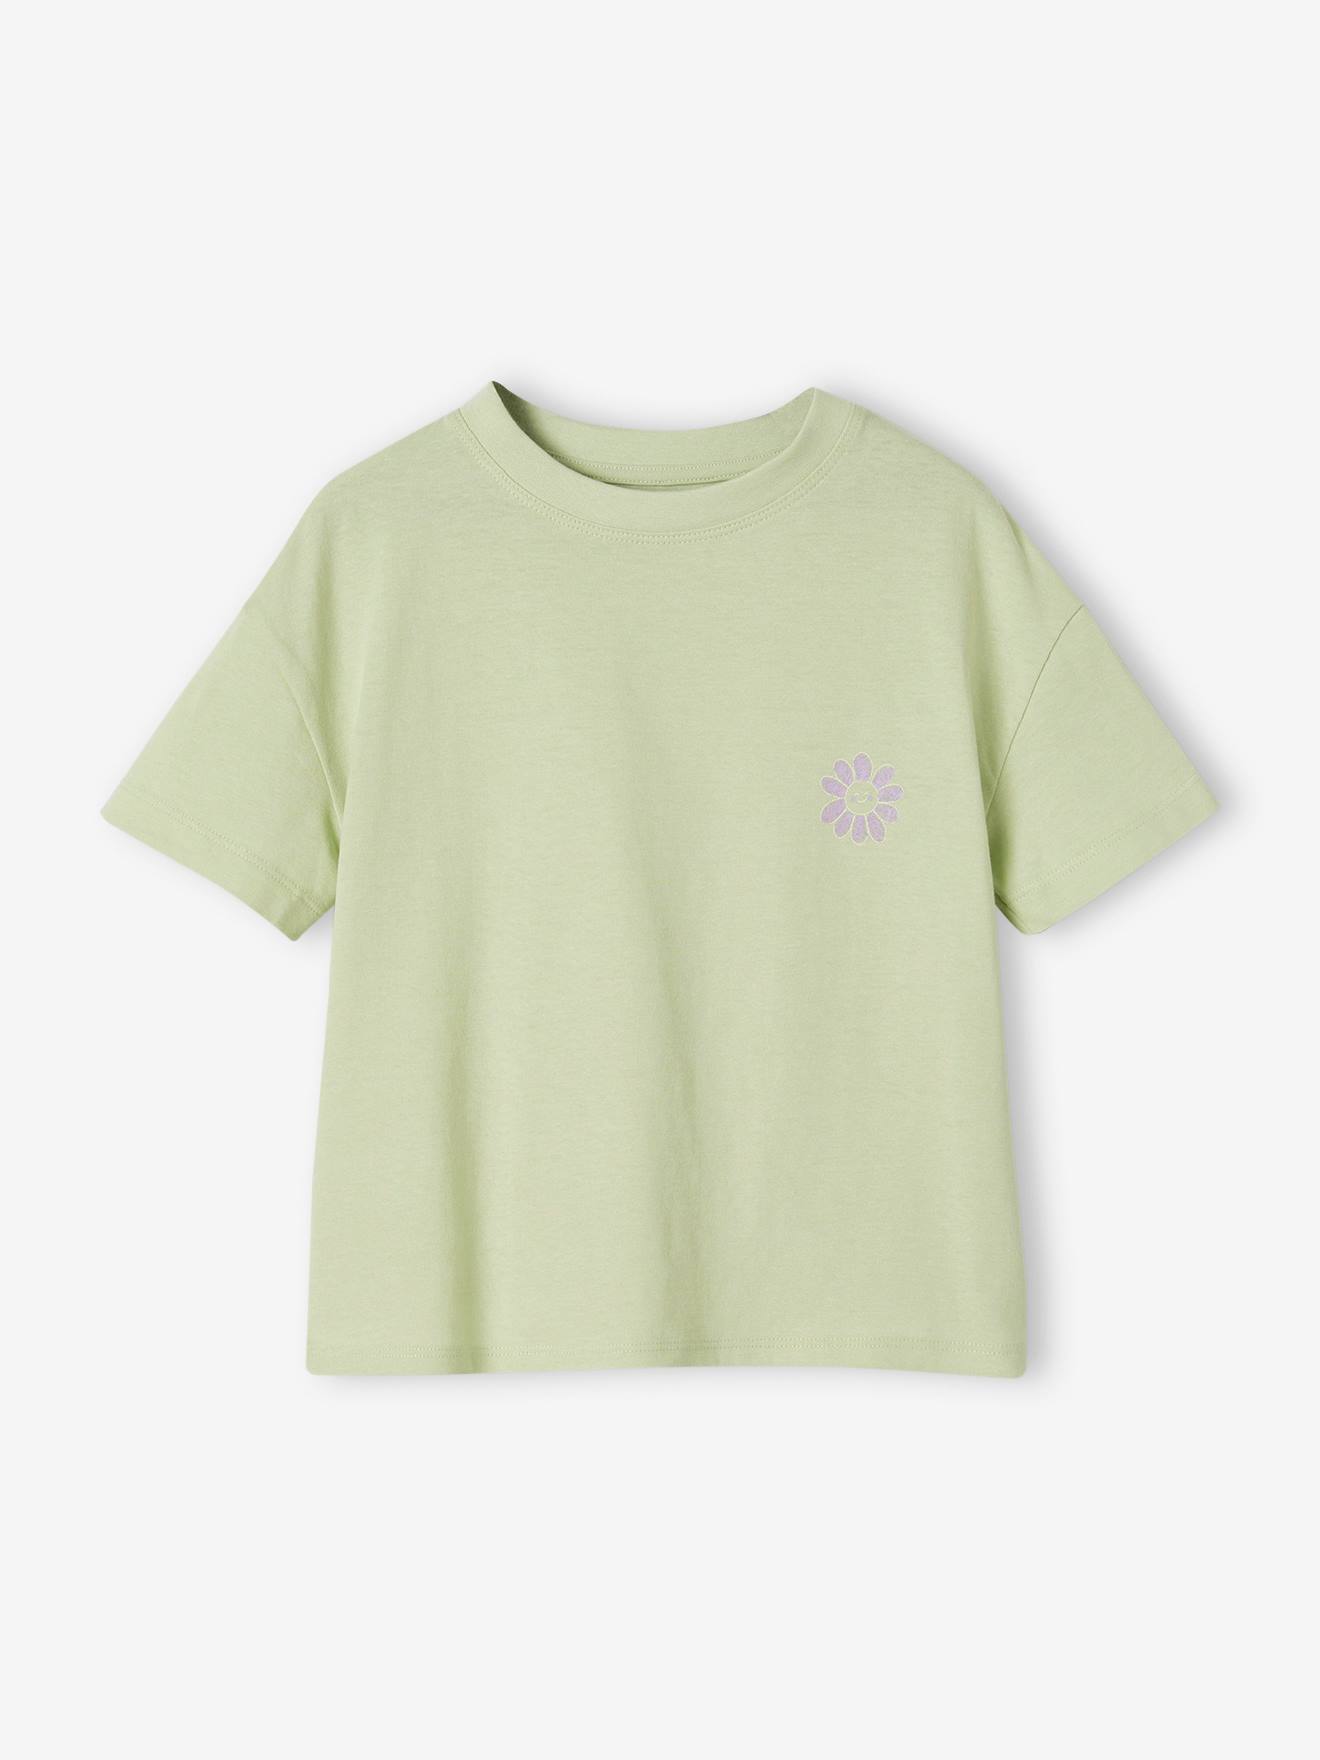 Plain Basics T-Shirt for Girls almond green